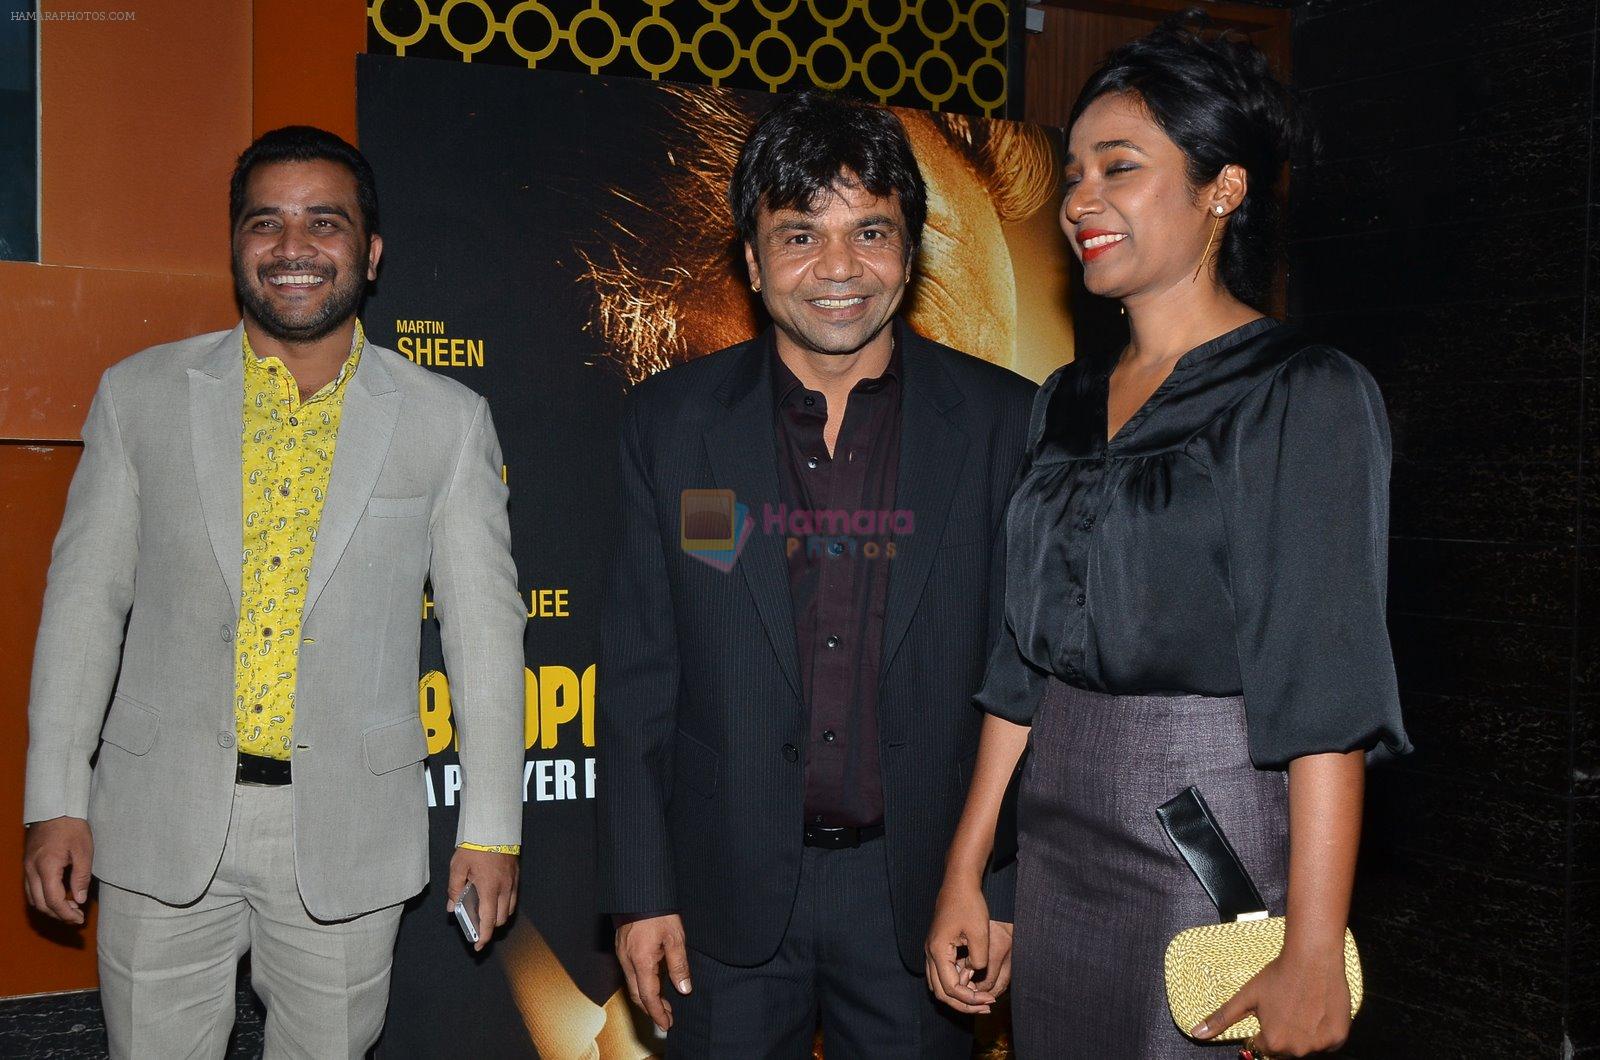 Rajpal Yadav, Tannishtha Chatterjee at Bhopal film premiere in Mumbai on 4th Dec 2014